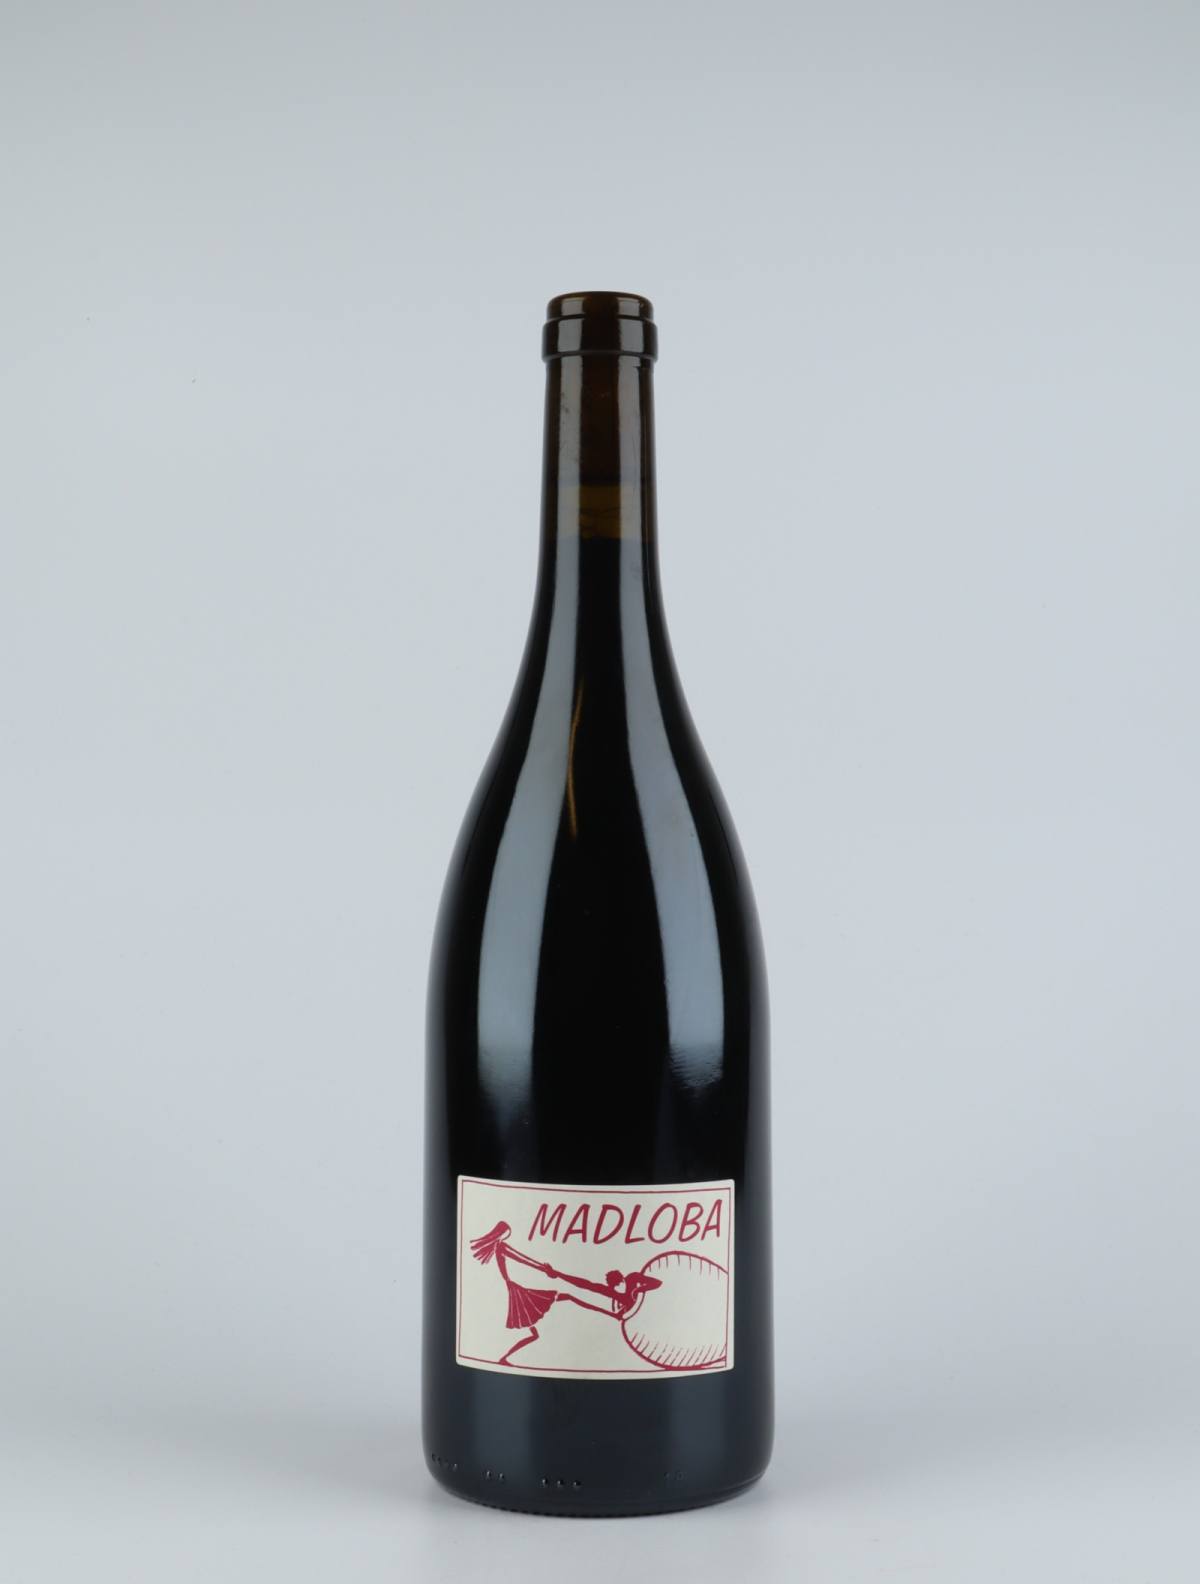 En flaske 2014 Saint-Joseph Madloba Rødvin fra Domaine des Miquettes, Rhône i Frankrig